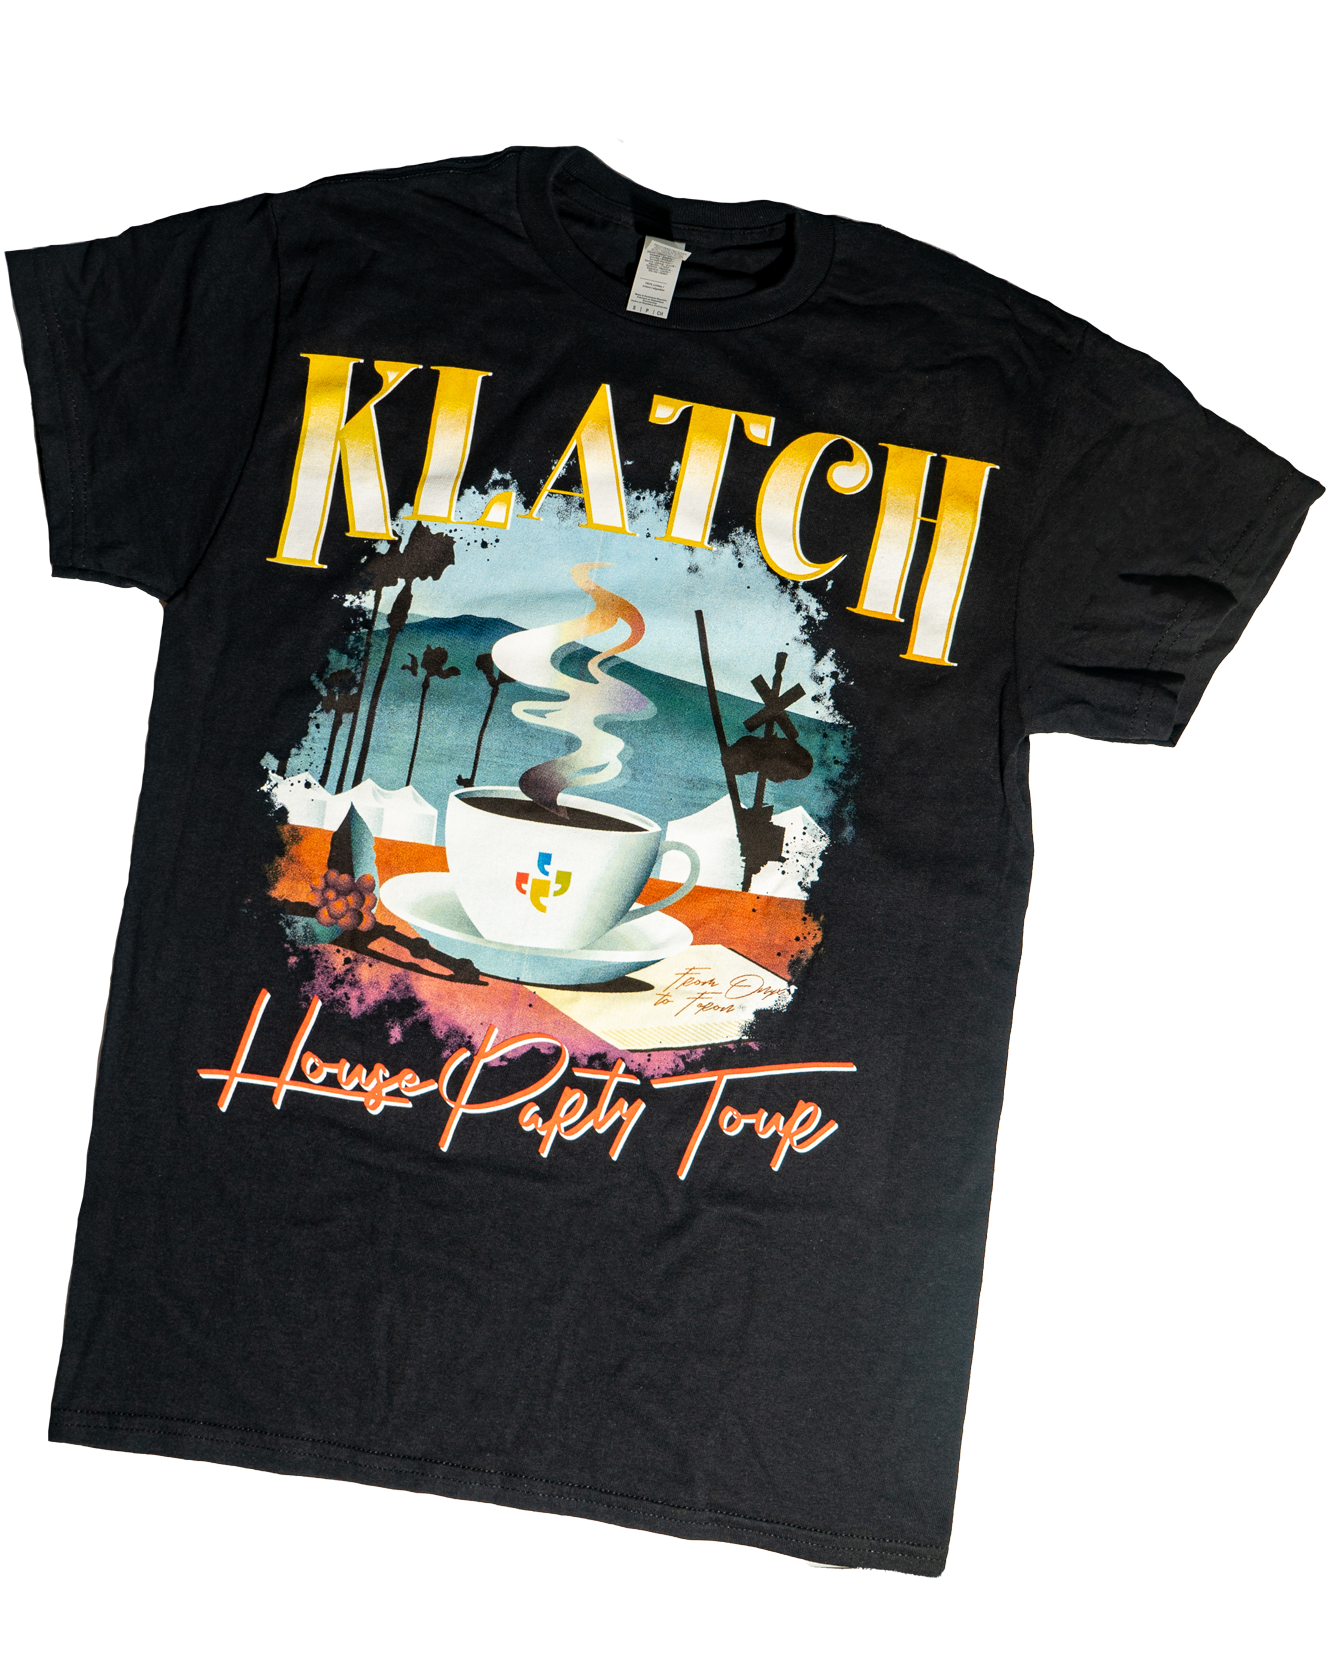 Klatch House Party T-Shirt | 100% Cotton T-Shirt